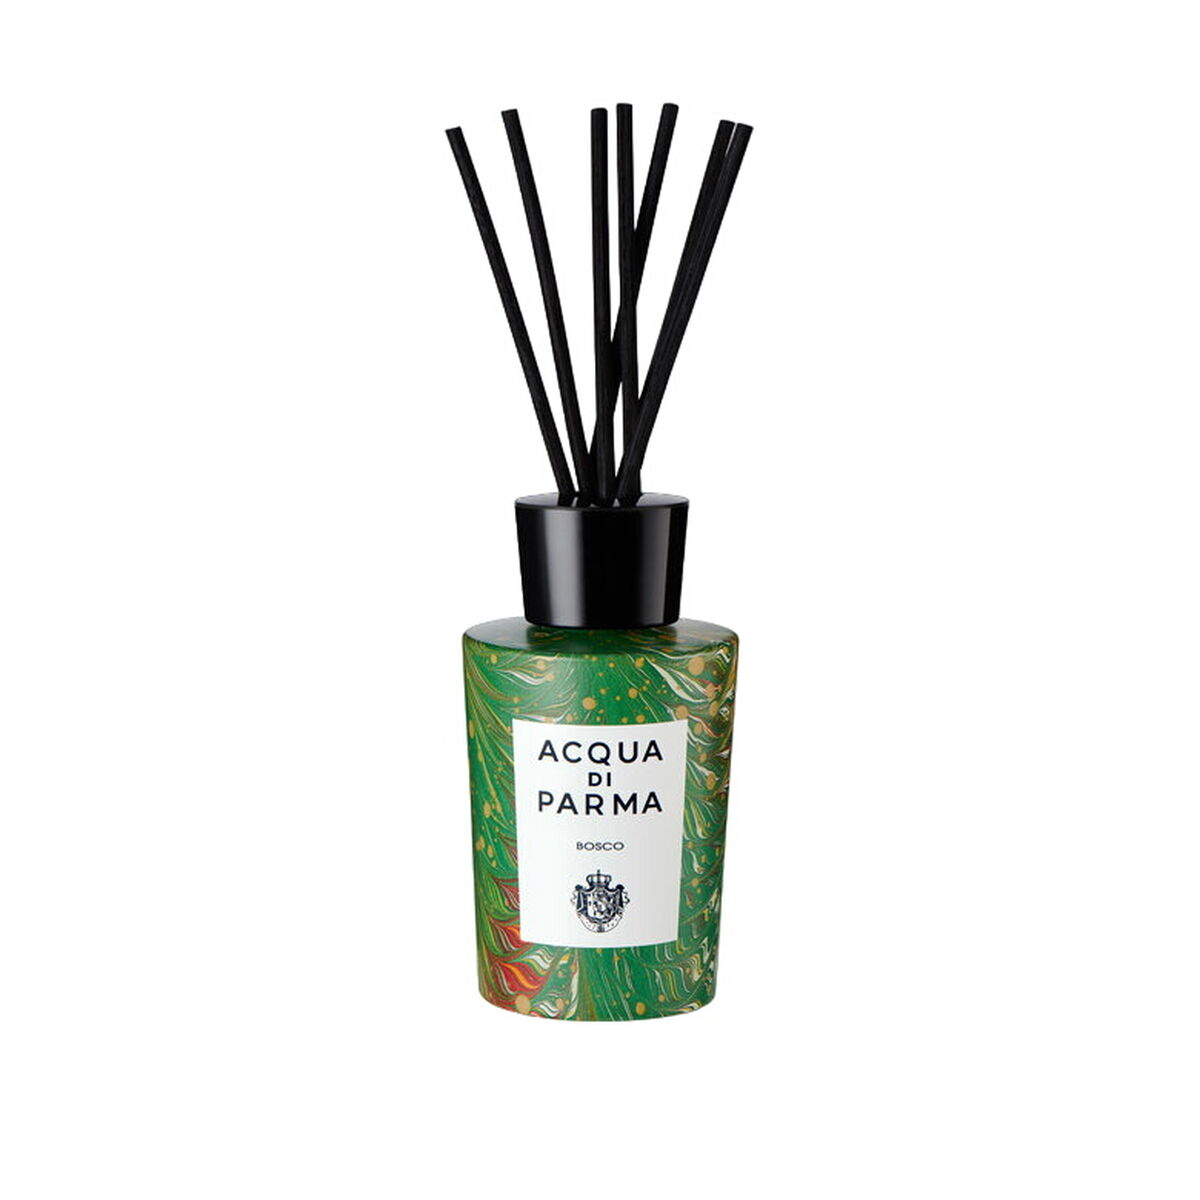 Perfume Sticks Acqua Di Parma Bosco 180 ml-0